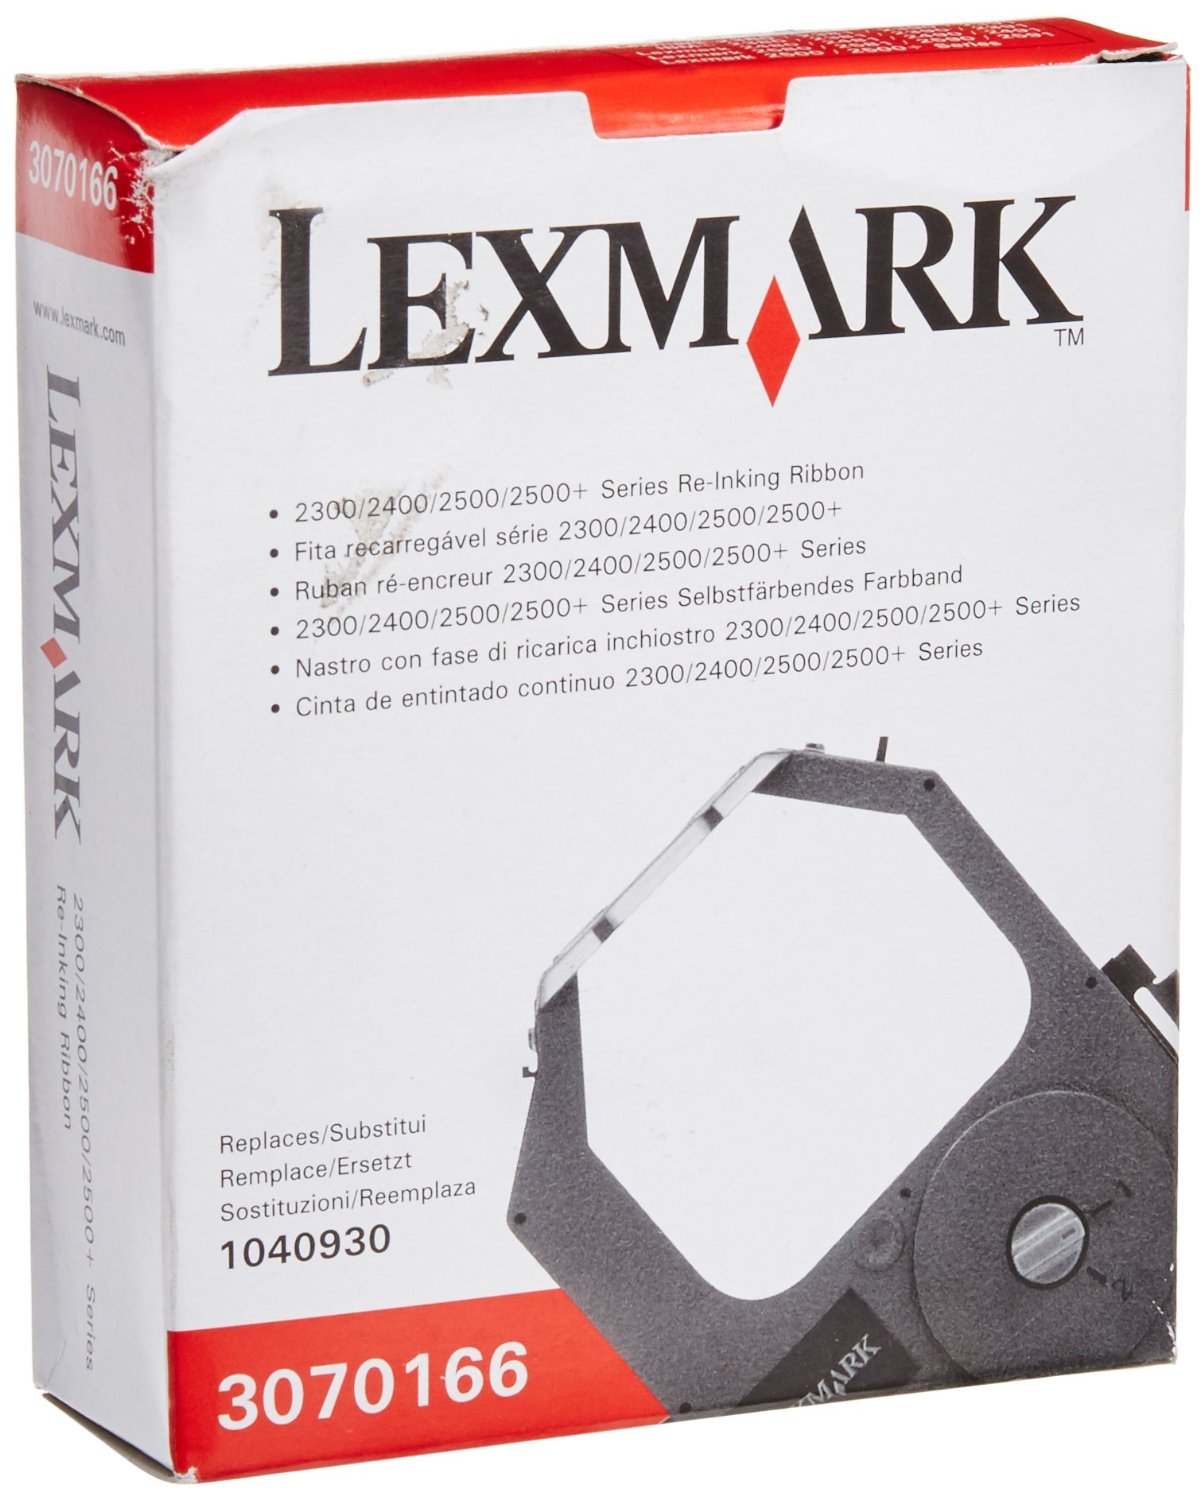 Lexmark originale Nastro colorato nero 3070166